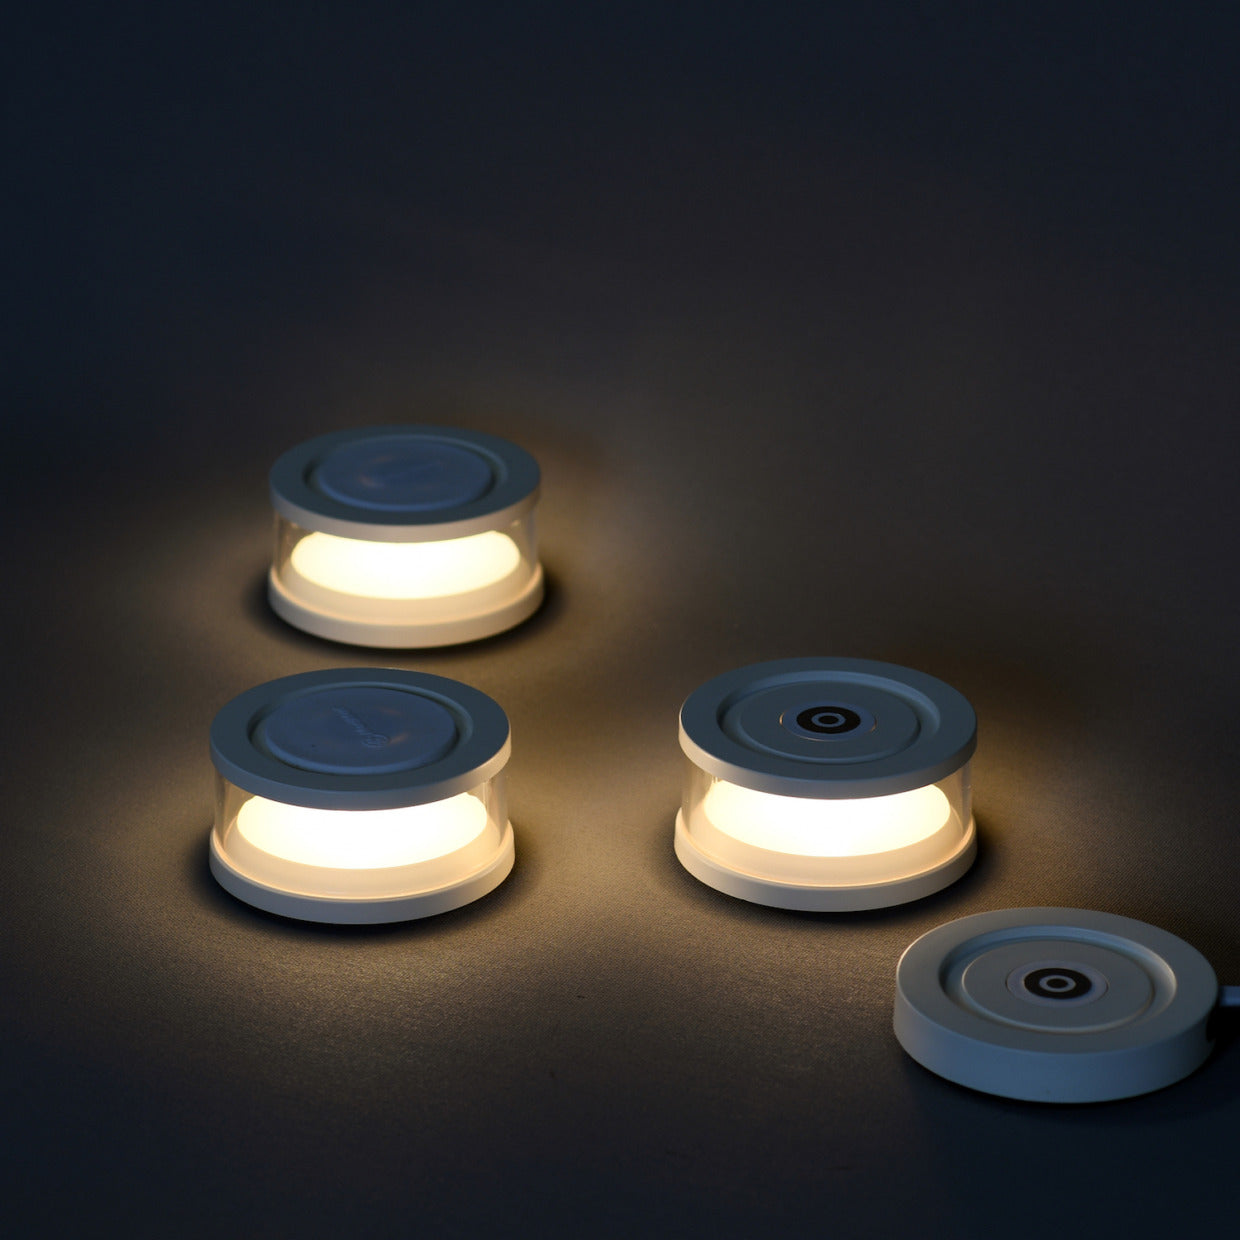 【3個セット】LED ライト 充電式スタッキング FLM-2102-WH S1 MoriMori LASMO モリモリ 照明 ライト 充電式 LEDライト 間接照明 ベッドライト アウトドア 軽量 持ち運び